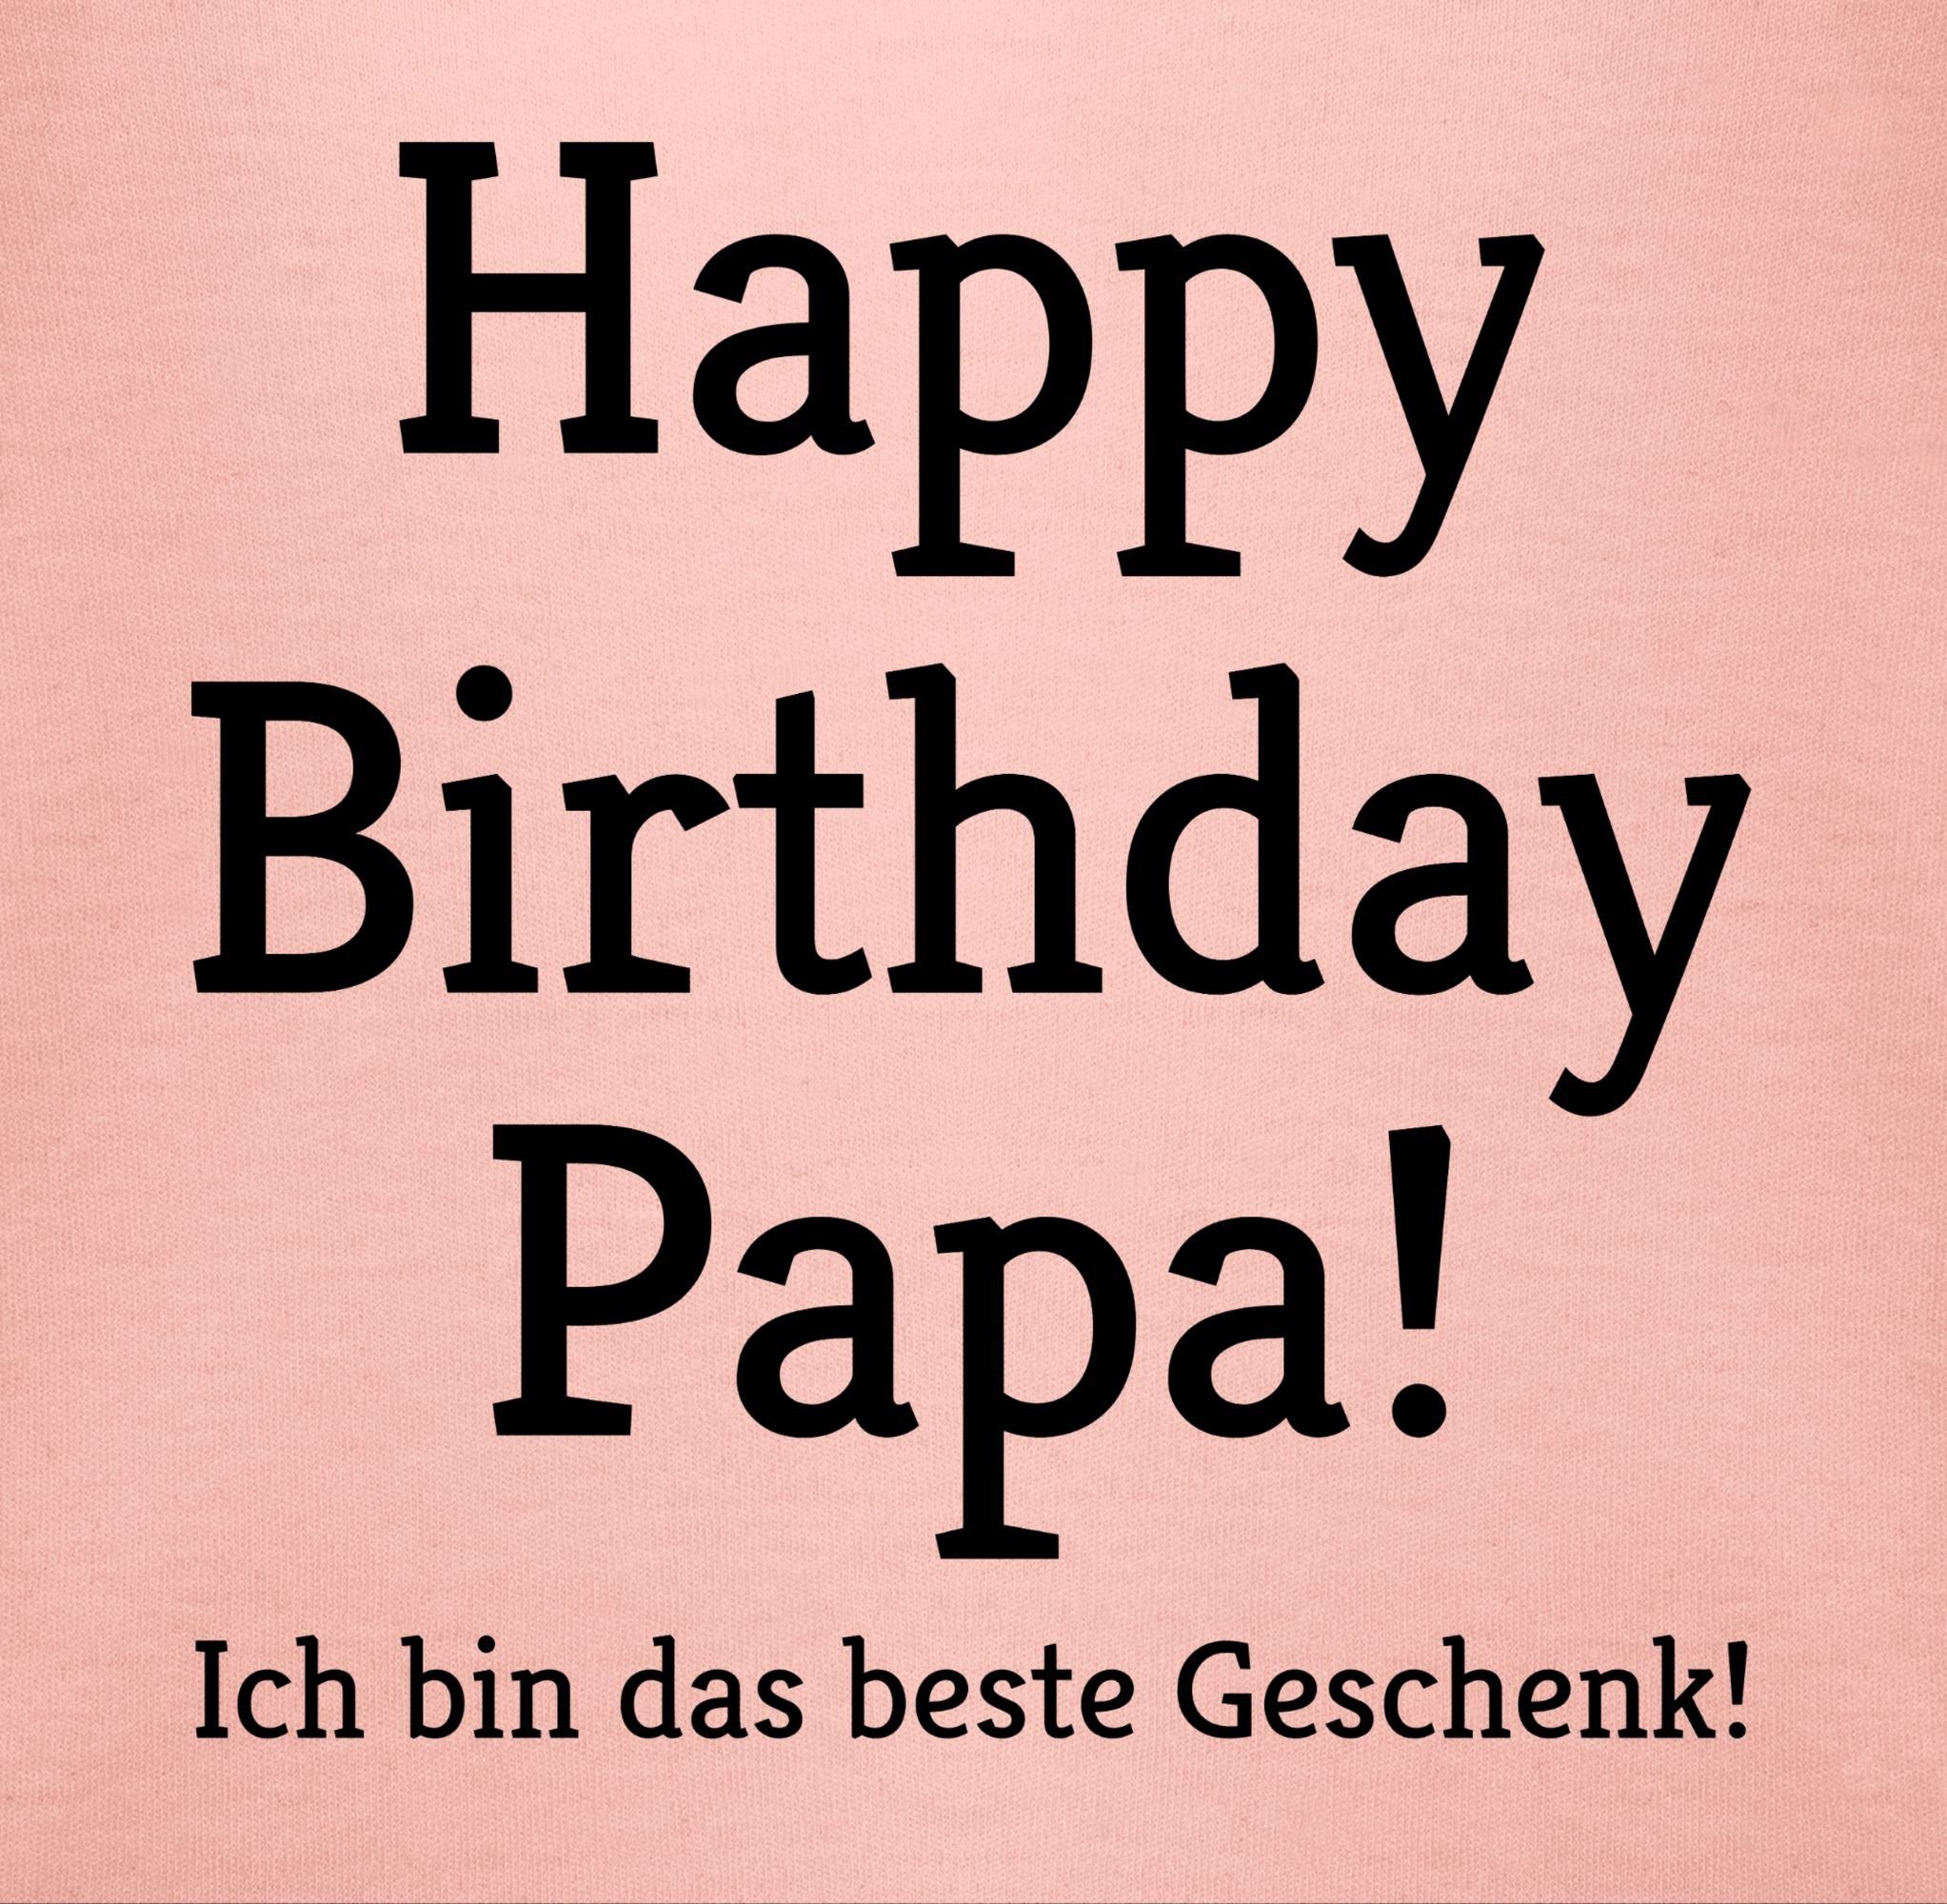 Shirtracer T-Shirt Happy Birthday Papa! Geschenk! Ich Baby das 1 Geschenke Babyrosa bin Event